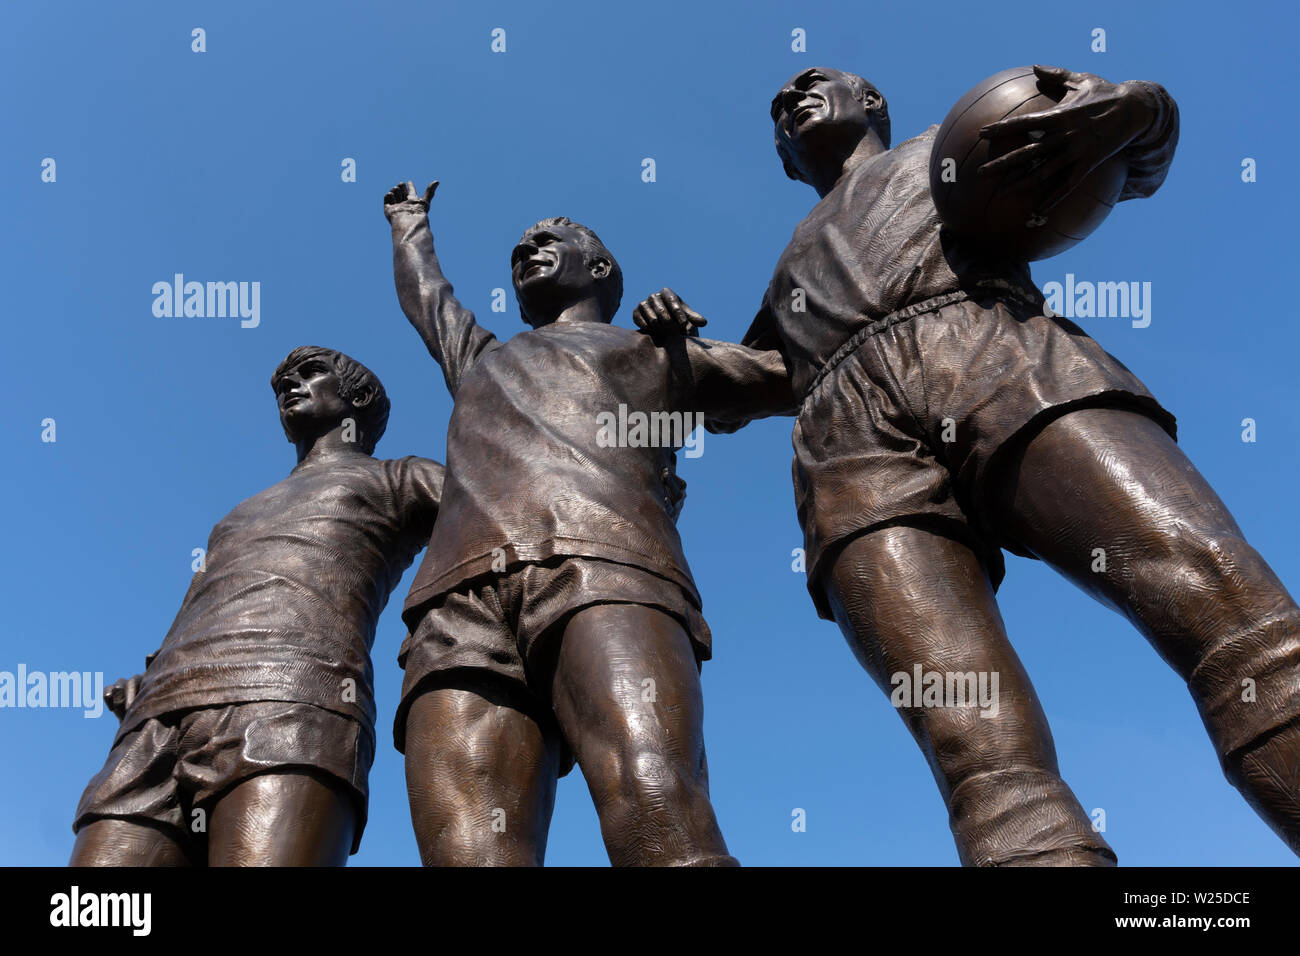 L'Organisation des 'Trinity' - une sculpture à l'extérieur d'Old Trafford, Manchester United, stade de football, avec George Best, Denis Law et Sir Bobby Charlton Banque D'Images